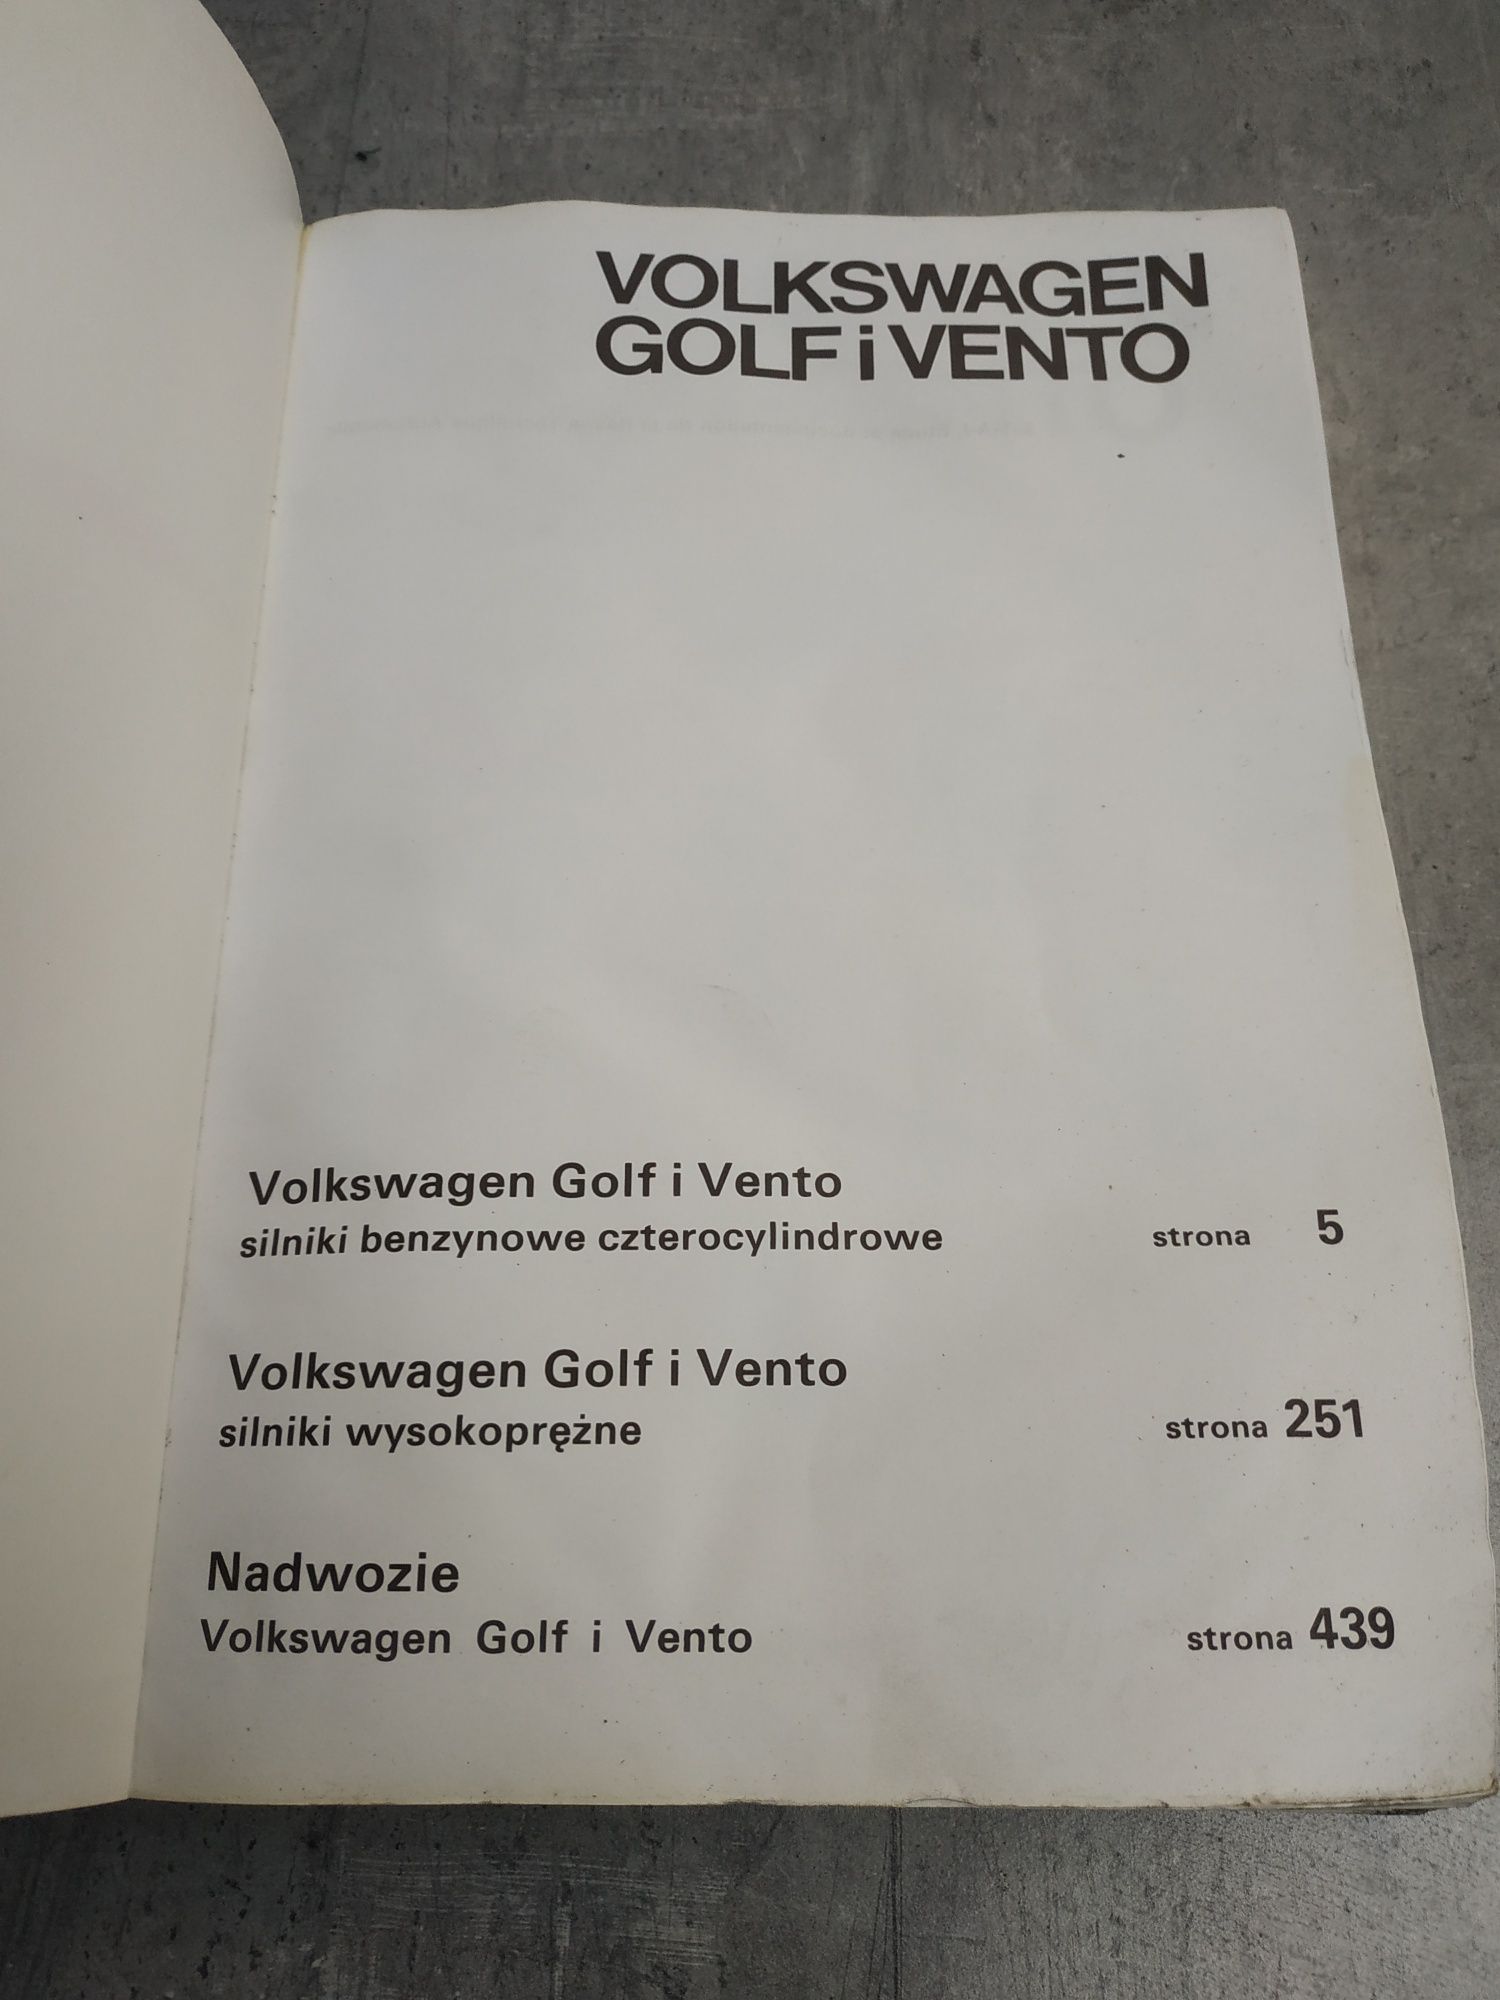 Sprzedam unikalną książkę serwisową Volkswagen Golf i Vento